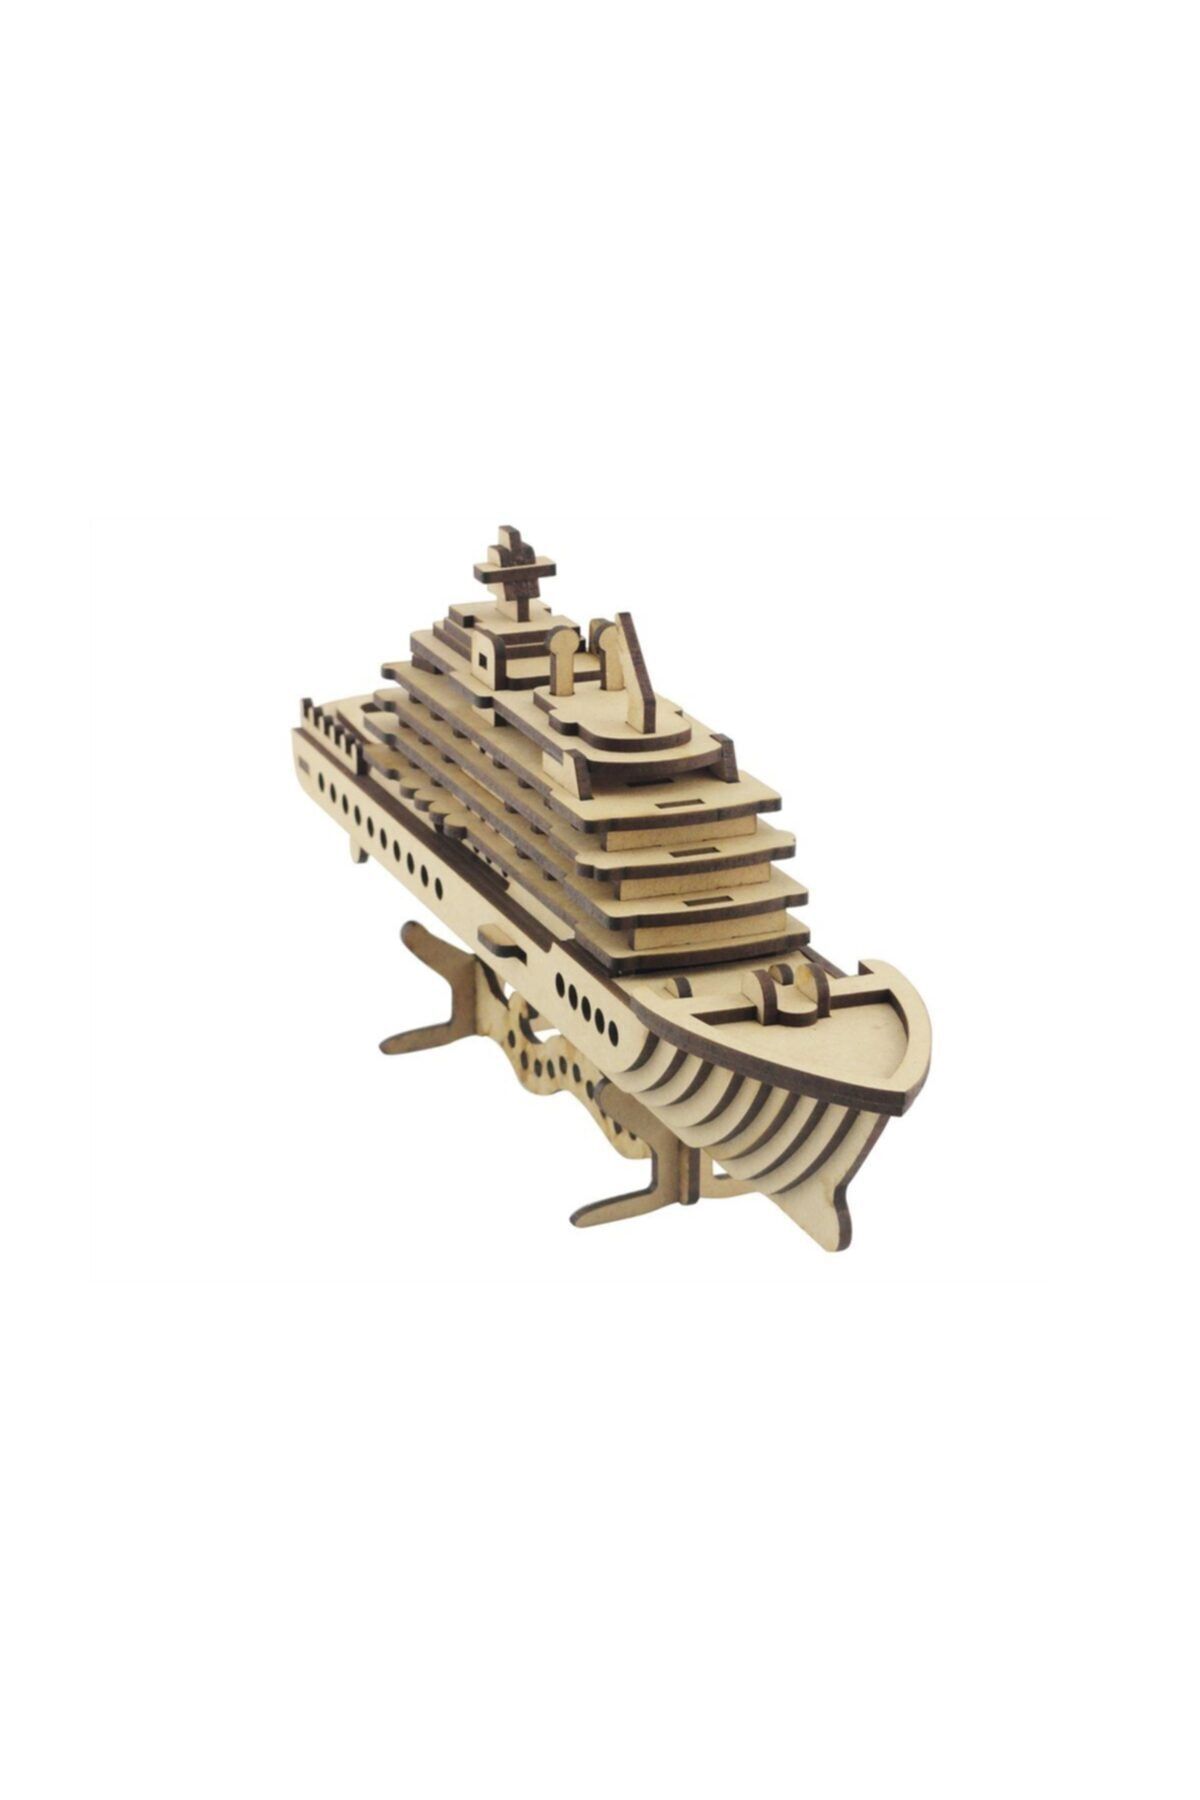 3D SERGİ Ahşap Puzzle, 3d Ahşap Cruise Gemi Maketi, 71 Parça